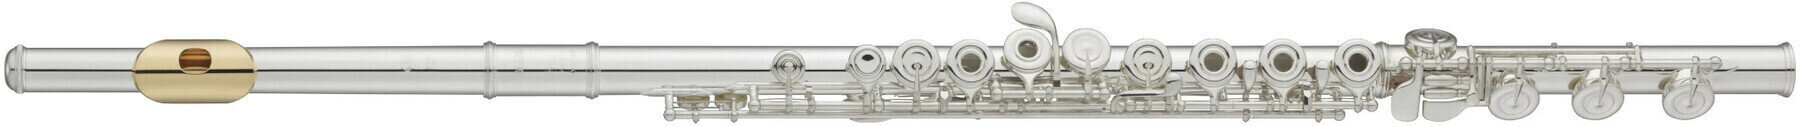 Concert flute Yamaha YFL 372HGL Concert flute